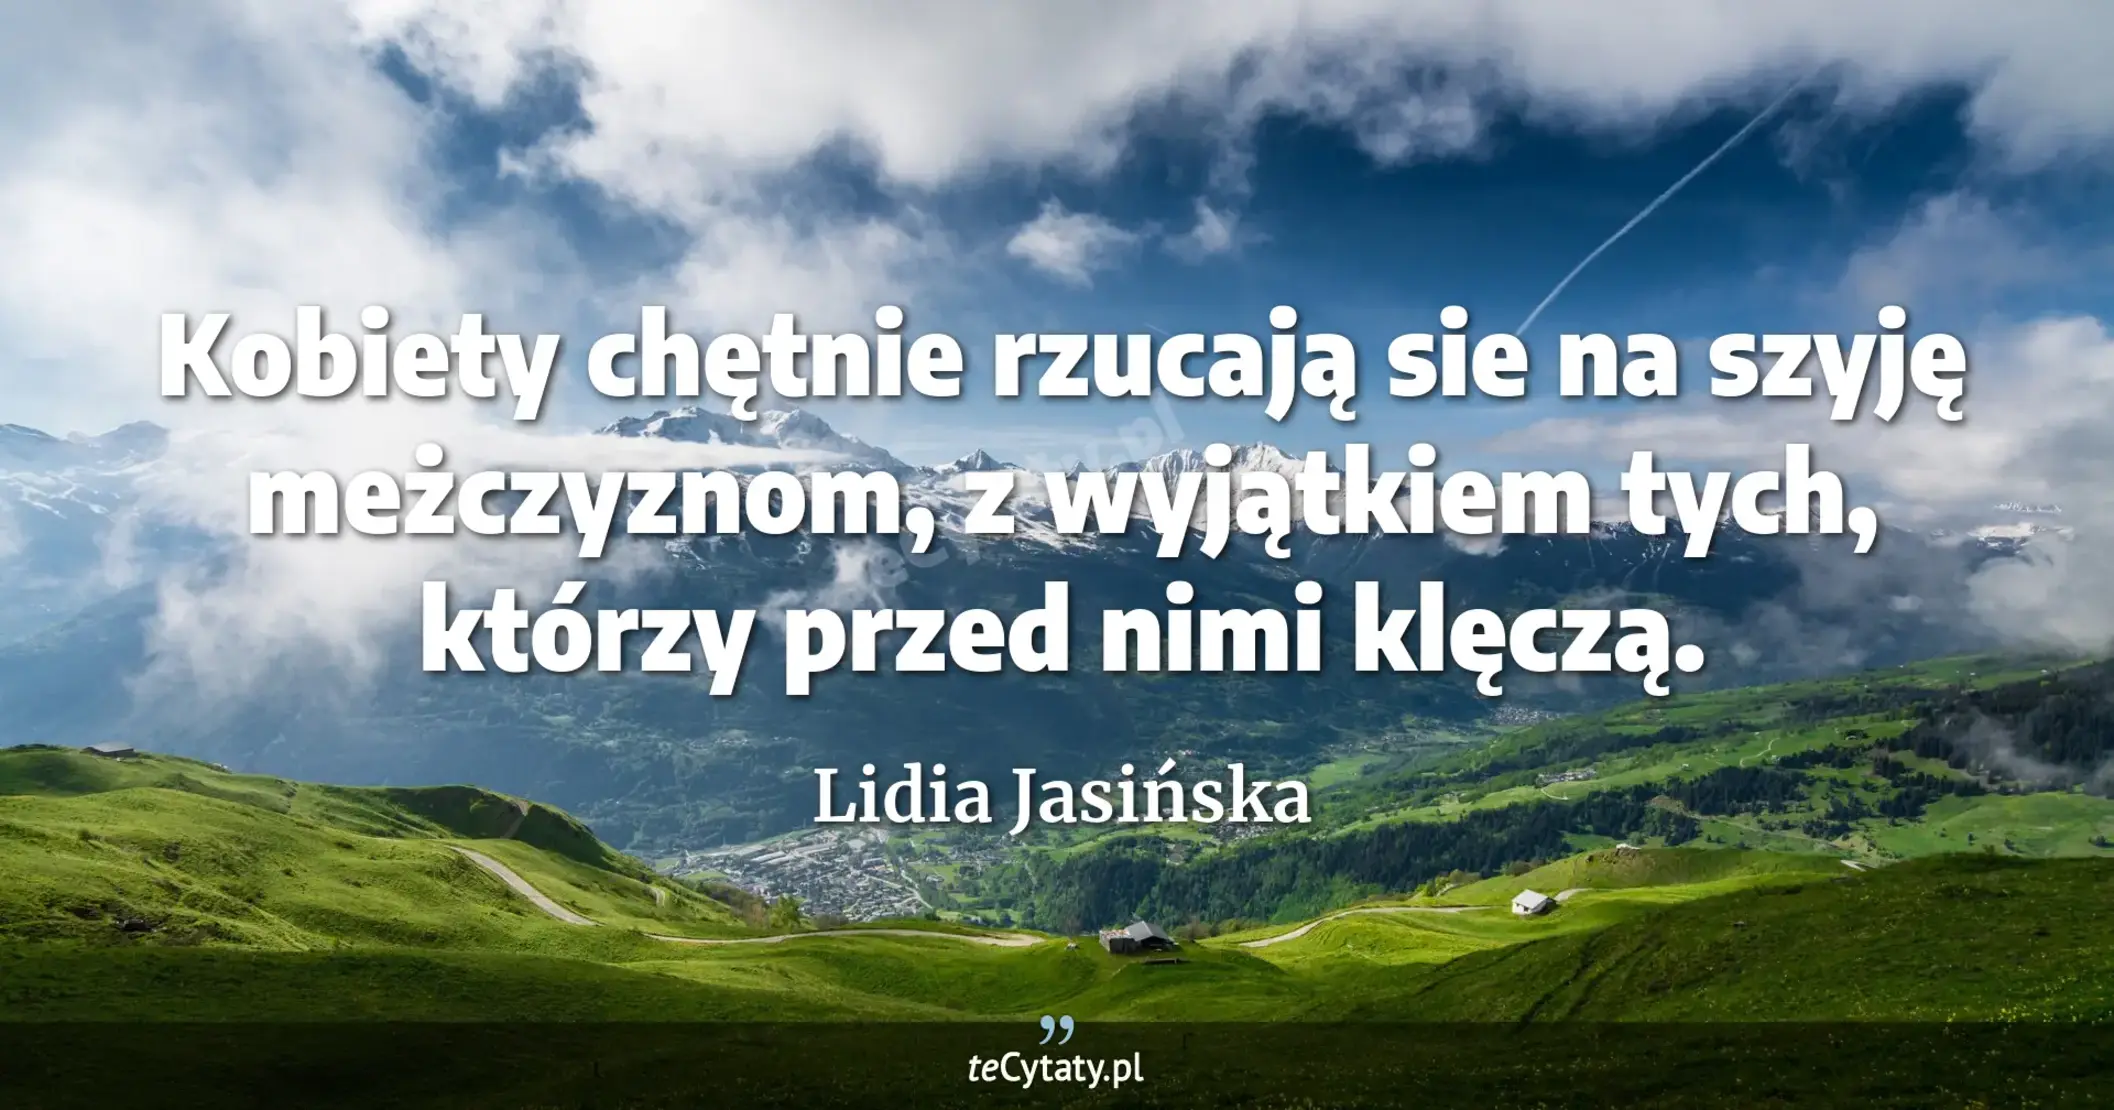 Kobiety chętnie rzucają sie na szyję meżczyznom, z wyjątkiem tych, którzy przed nimi klęczą. - Lidia Jasińska